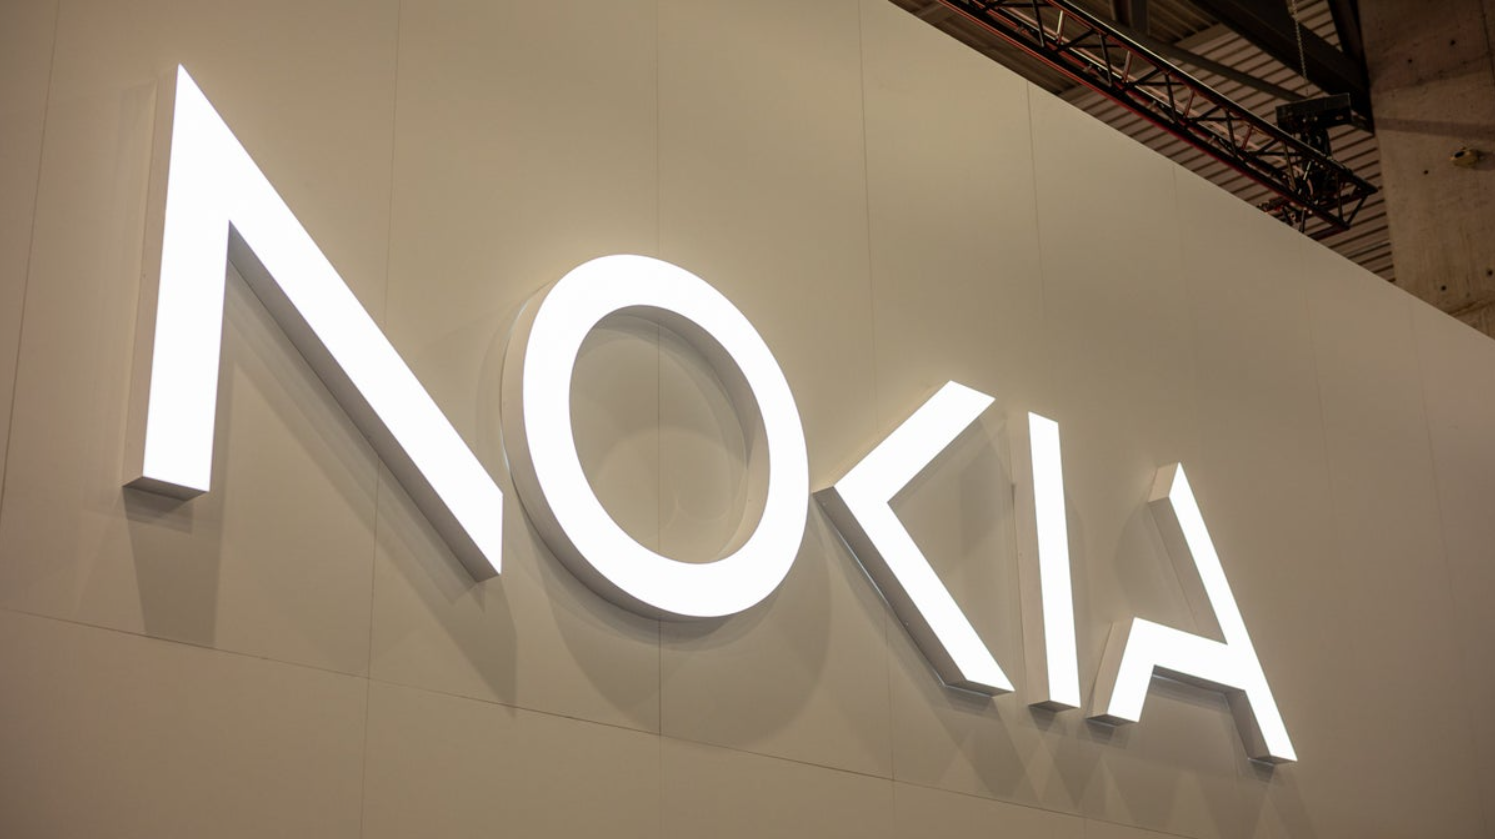 Nokia đang là nhà cung cấp “các công nghệ đổi mới” cho Chính phủ Mỹ.